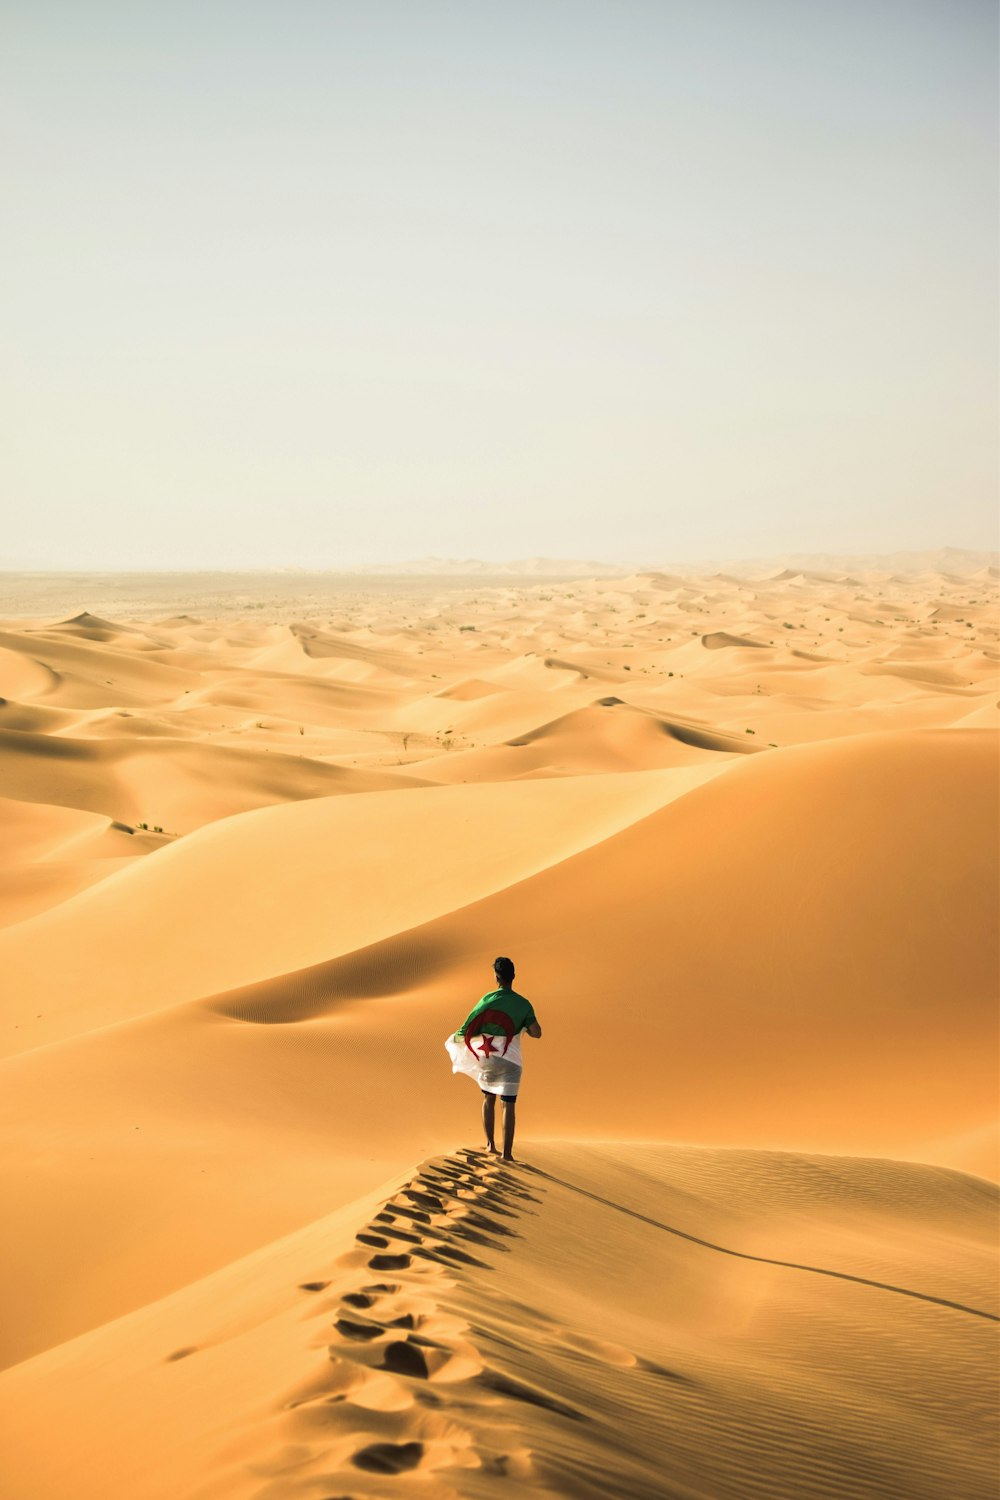 a man walking across a desert holding a surfboard